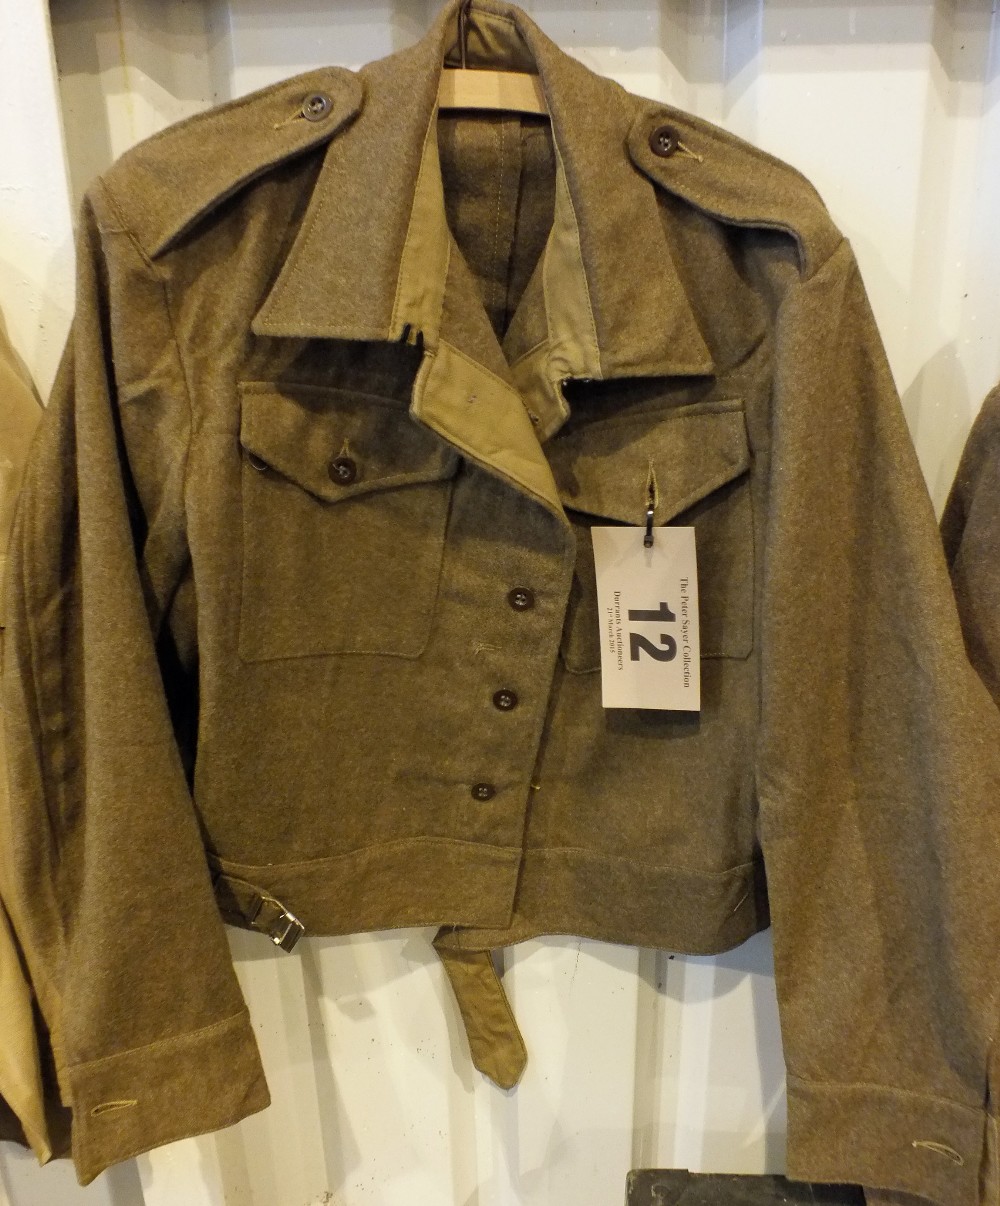 A 1940 Patt. battledress blouse dated 19